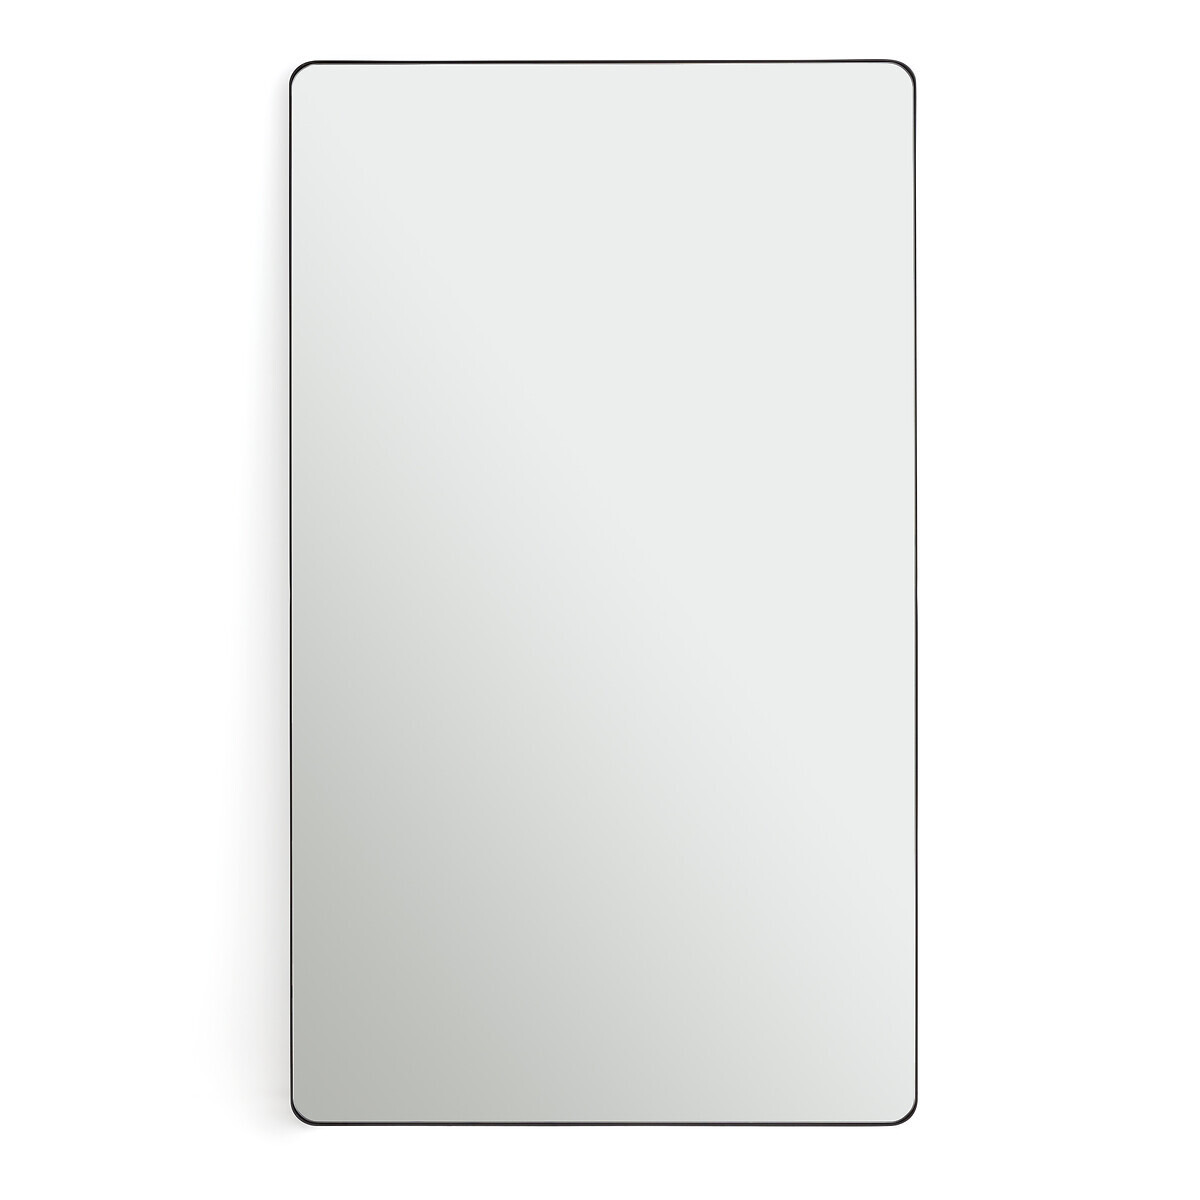 Iodus 100 x 70cm Rectangular Metal Mirror - image 1